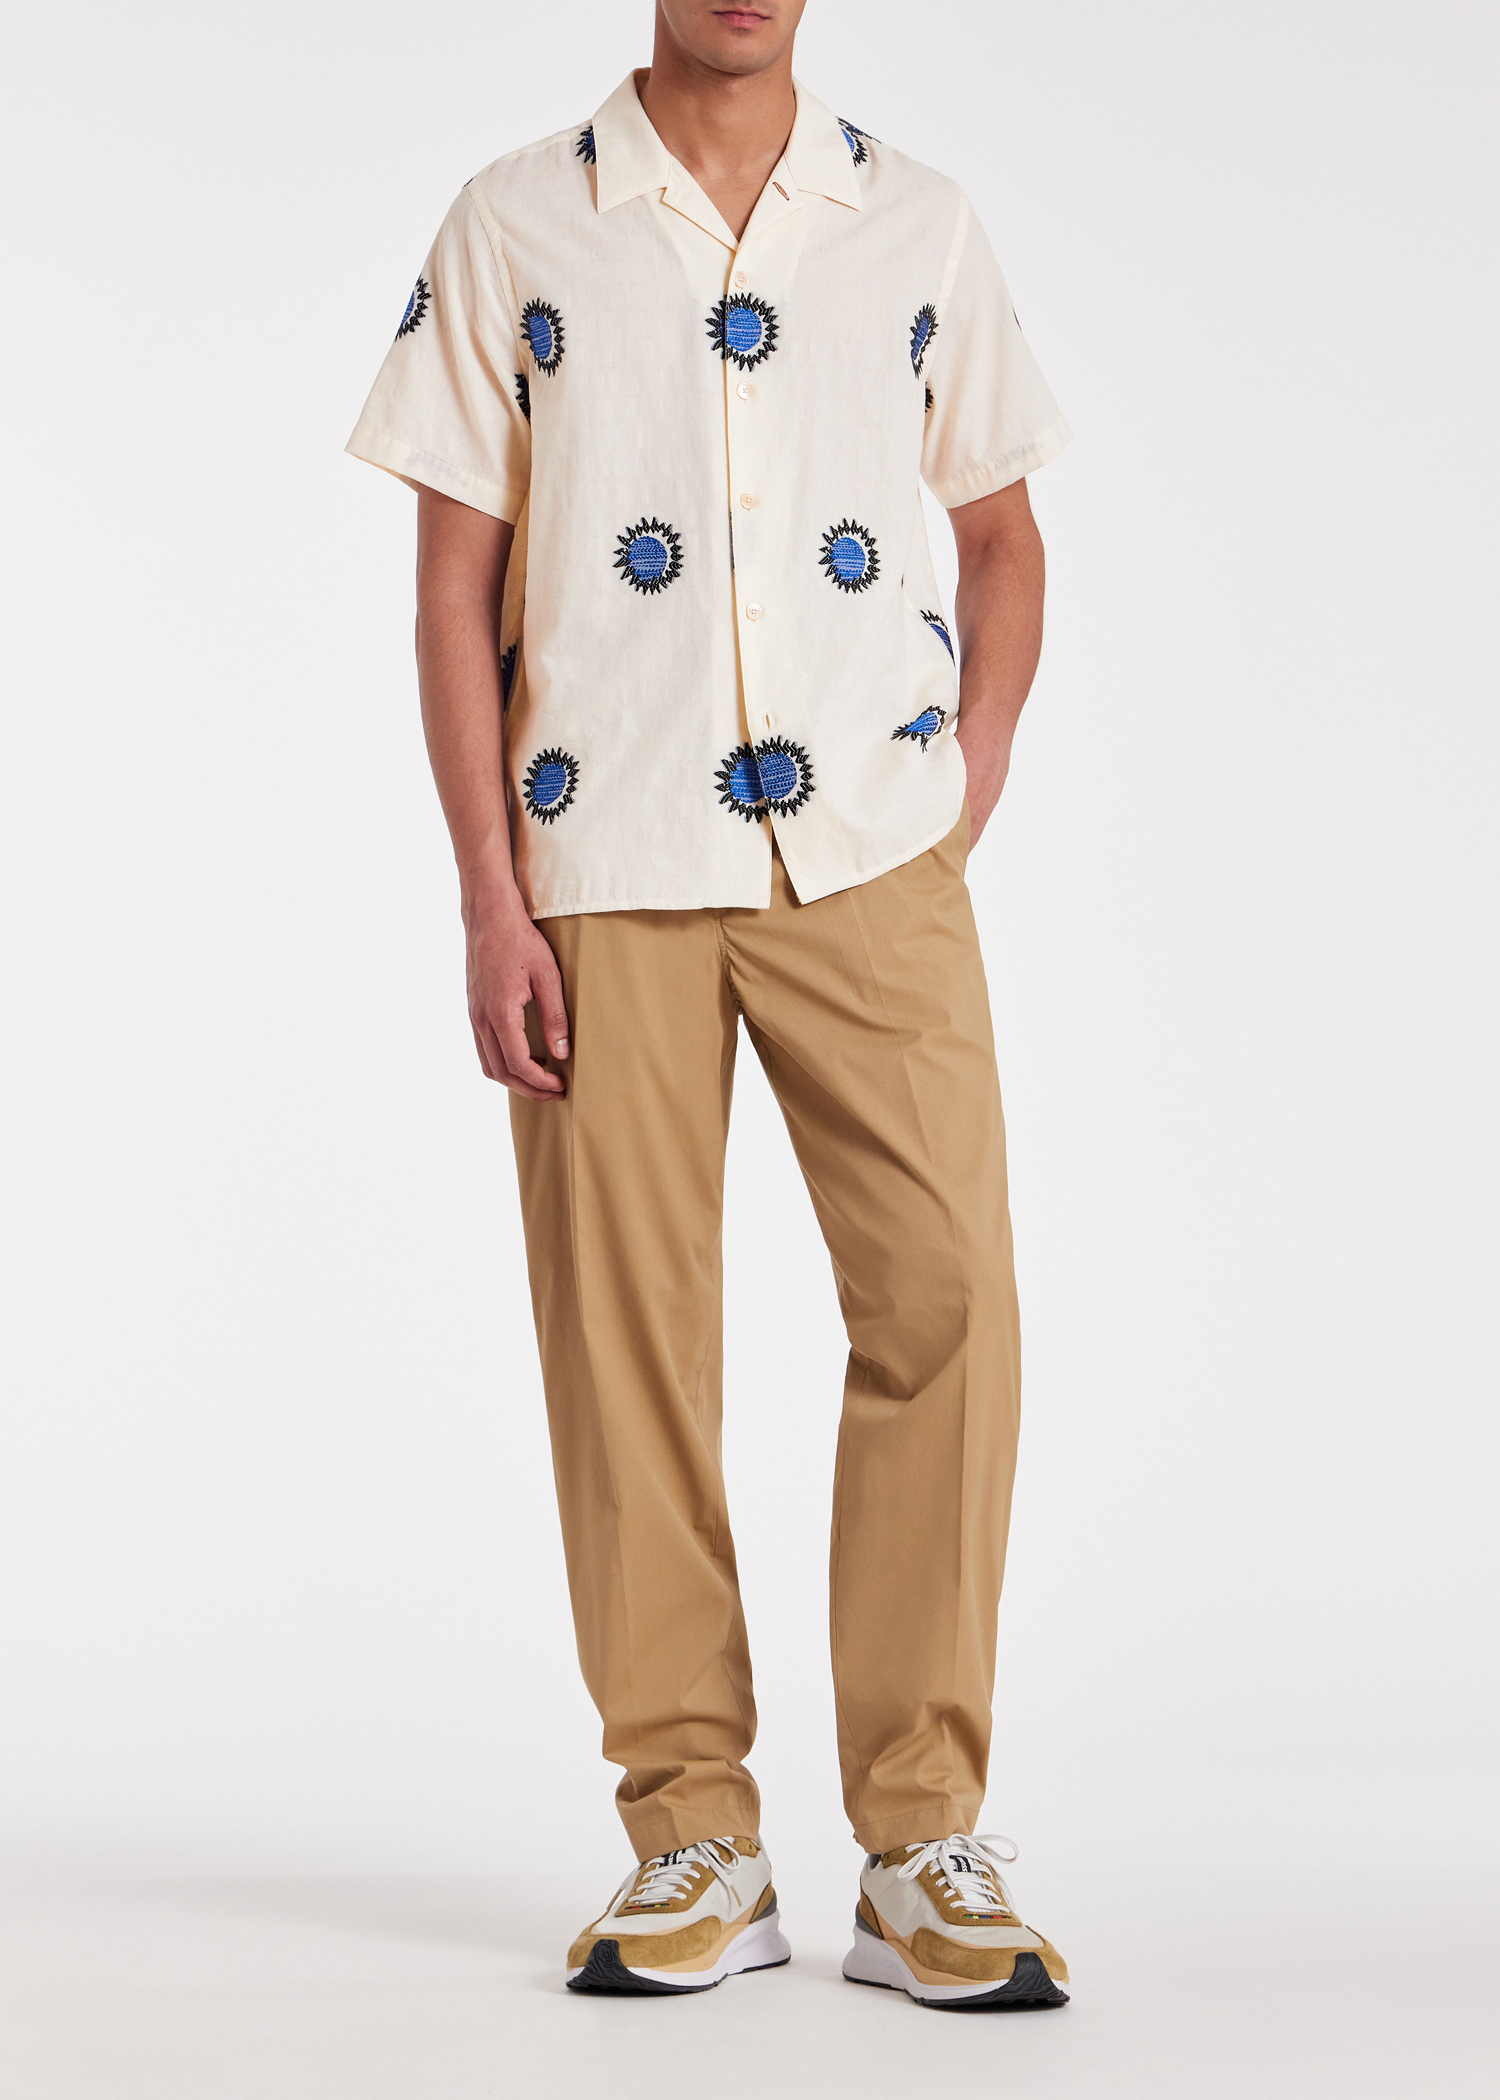 Men's White Cotton-Blend Fil Coupé 'Sun' Shirt